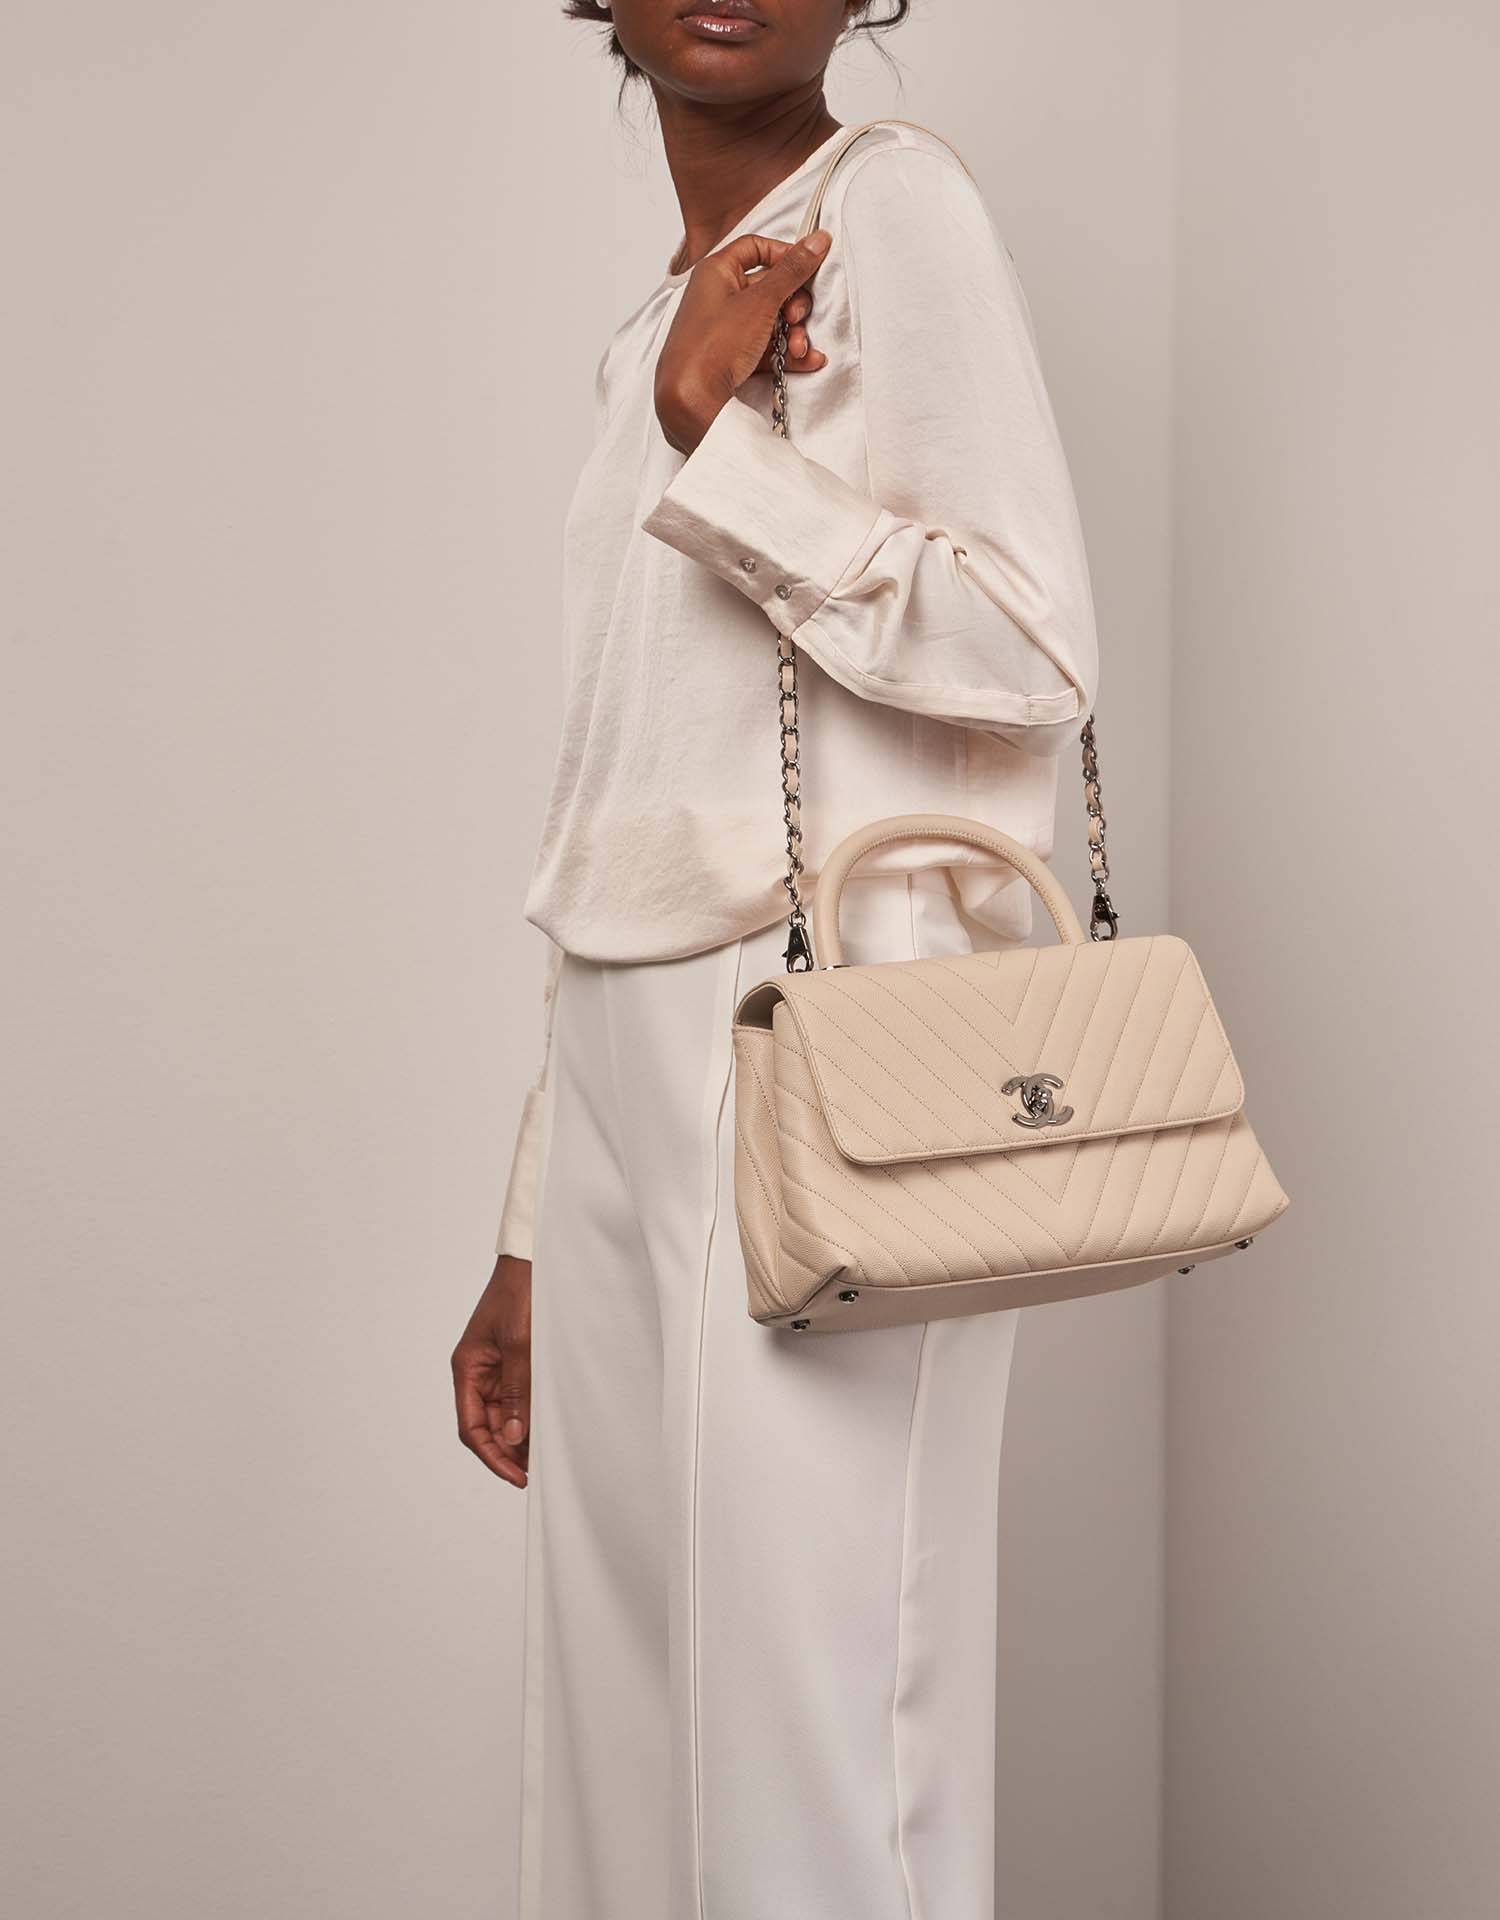 Chanel TimelessHandle Medium Beige on Model | Verkaufen Sie Ihre Designer-Tasche auf Saclab.com